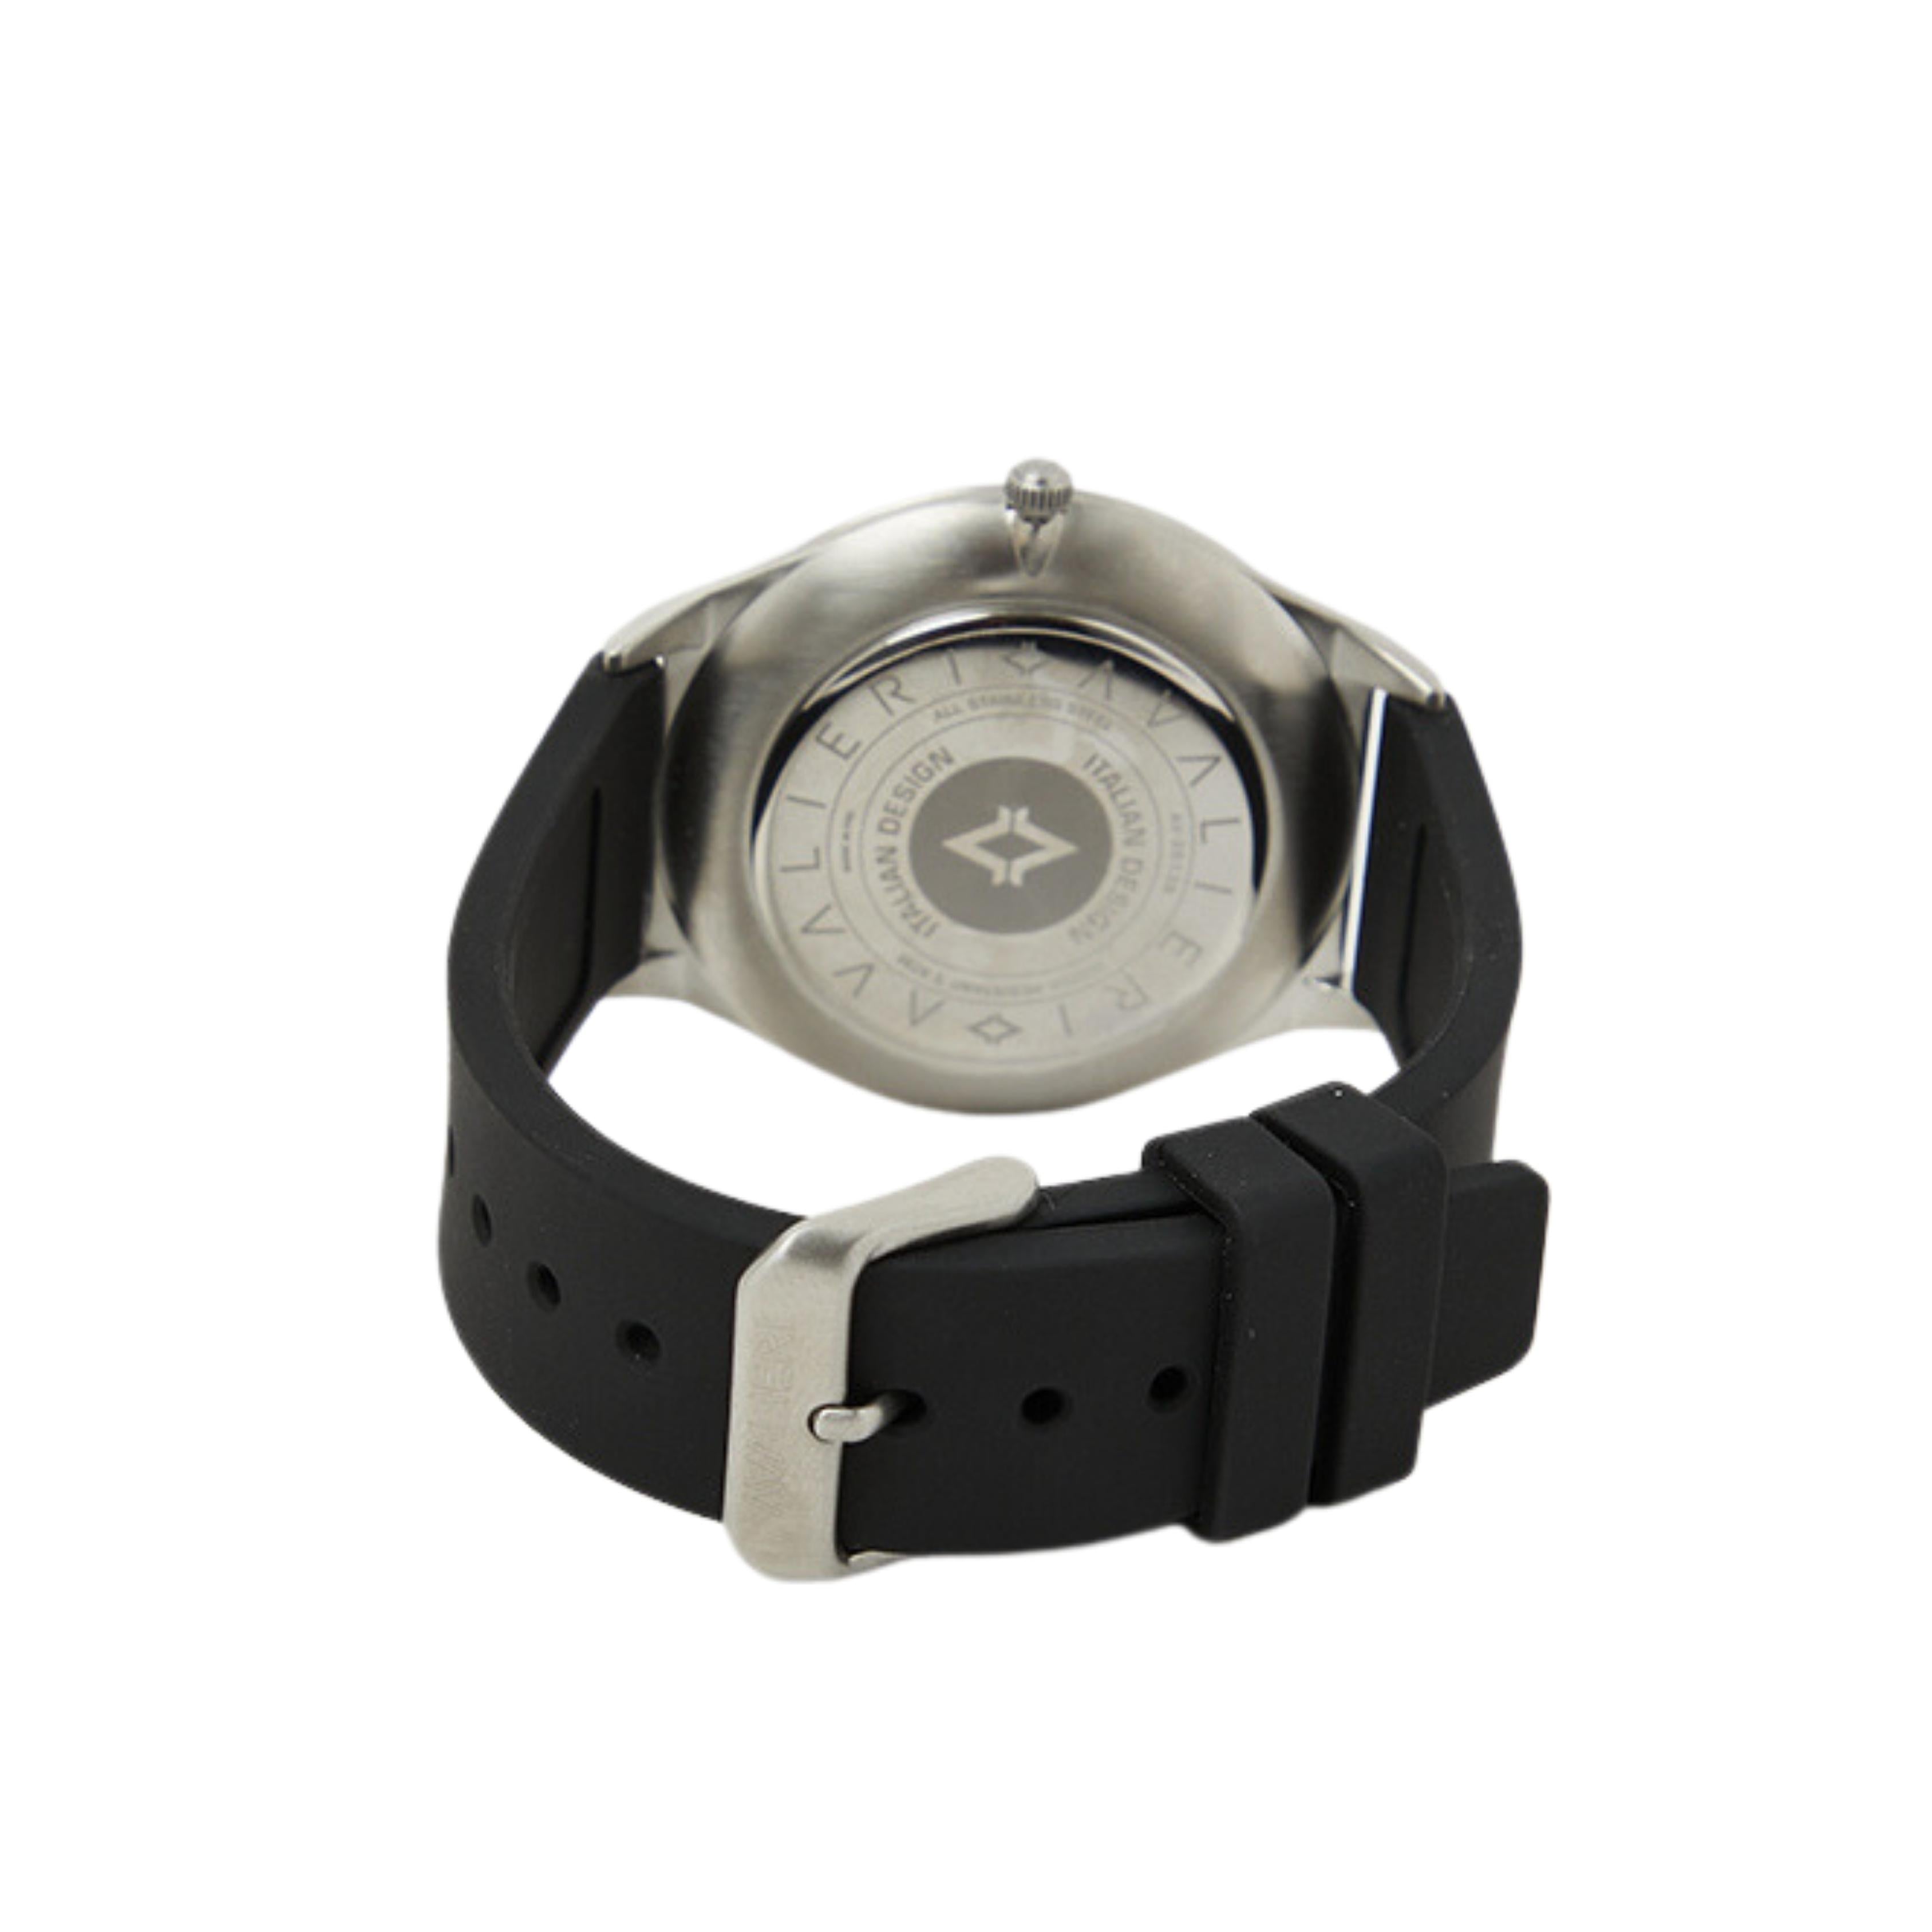 Avalieri Men's Quartz Black Dial Watch - AV-2613B